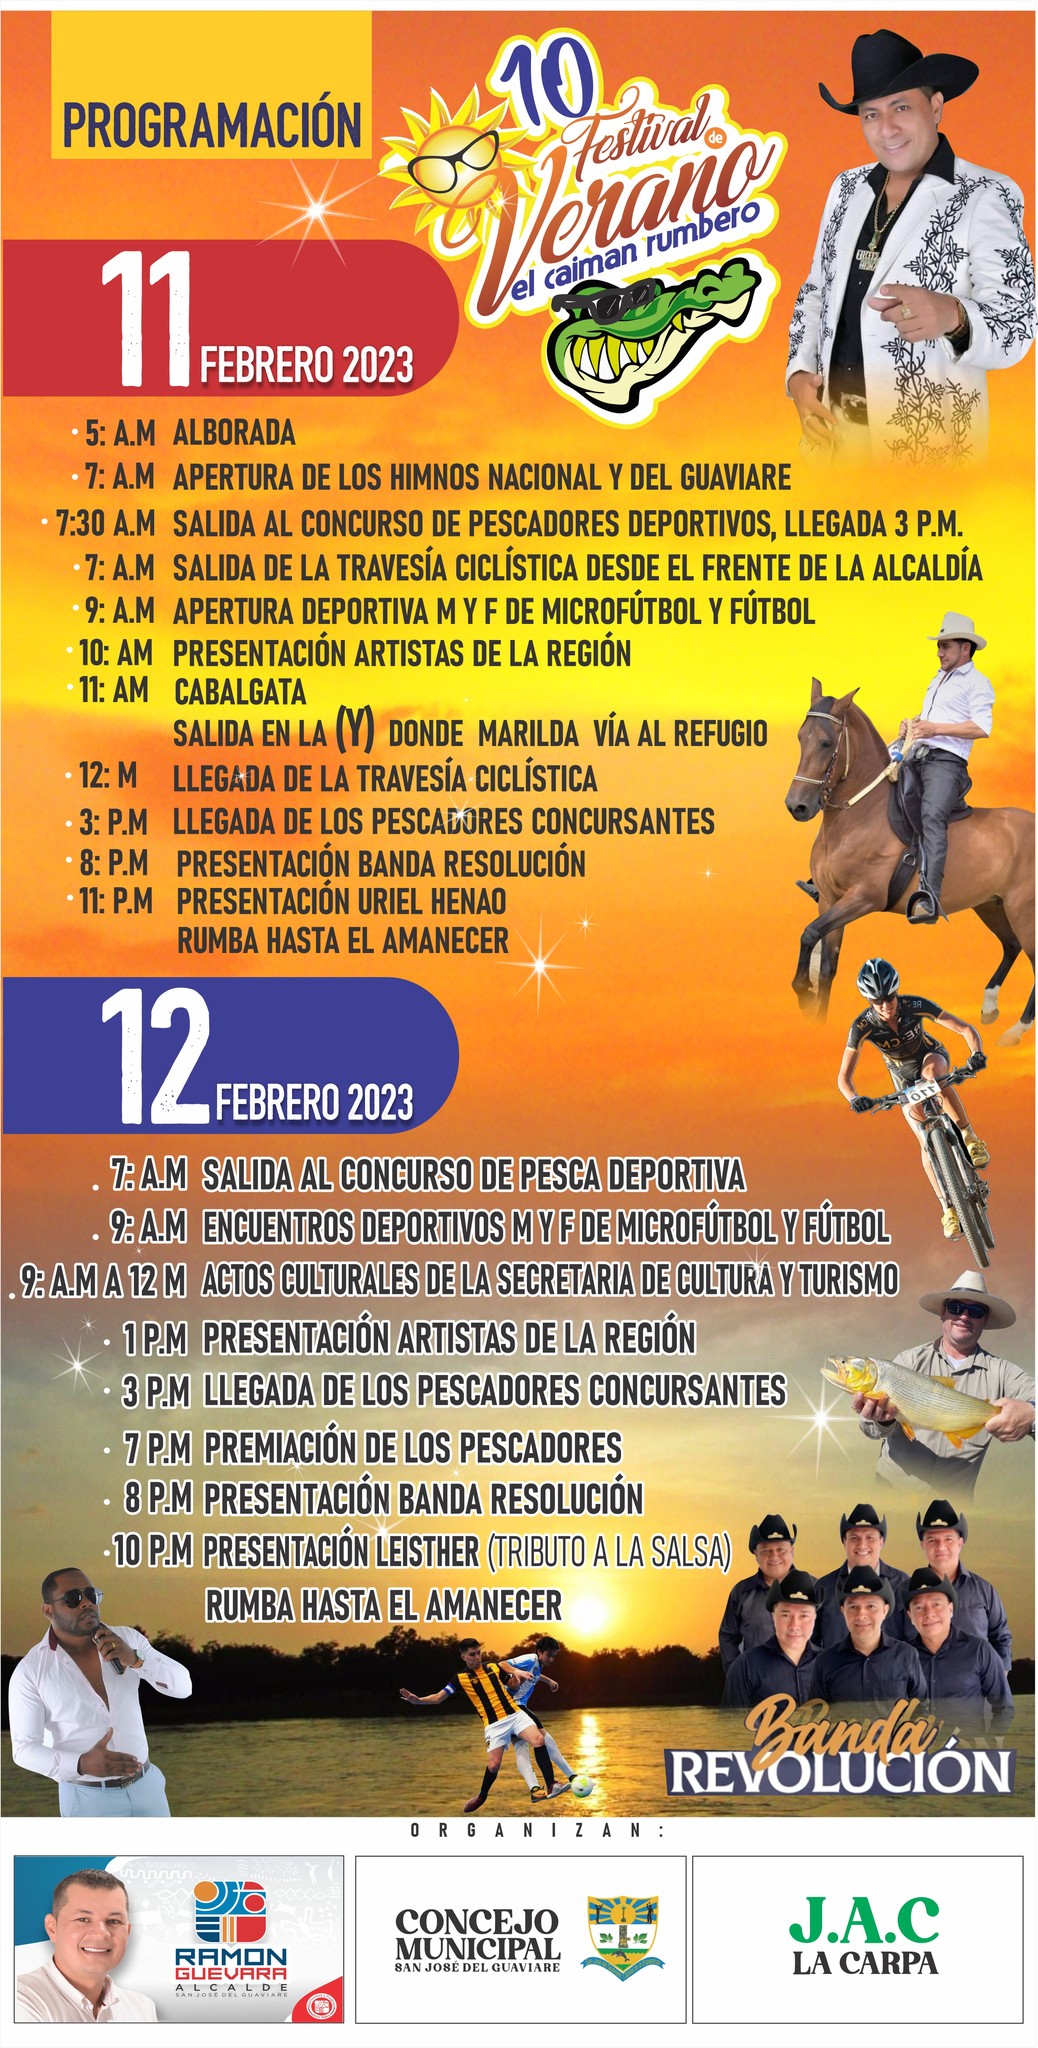 Programación oficial del X Festival de Verano el Caimán Rumbero.jpg